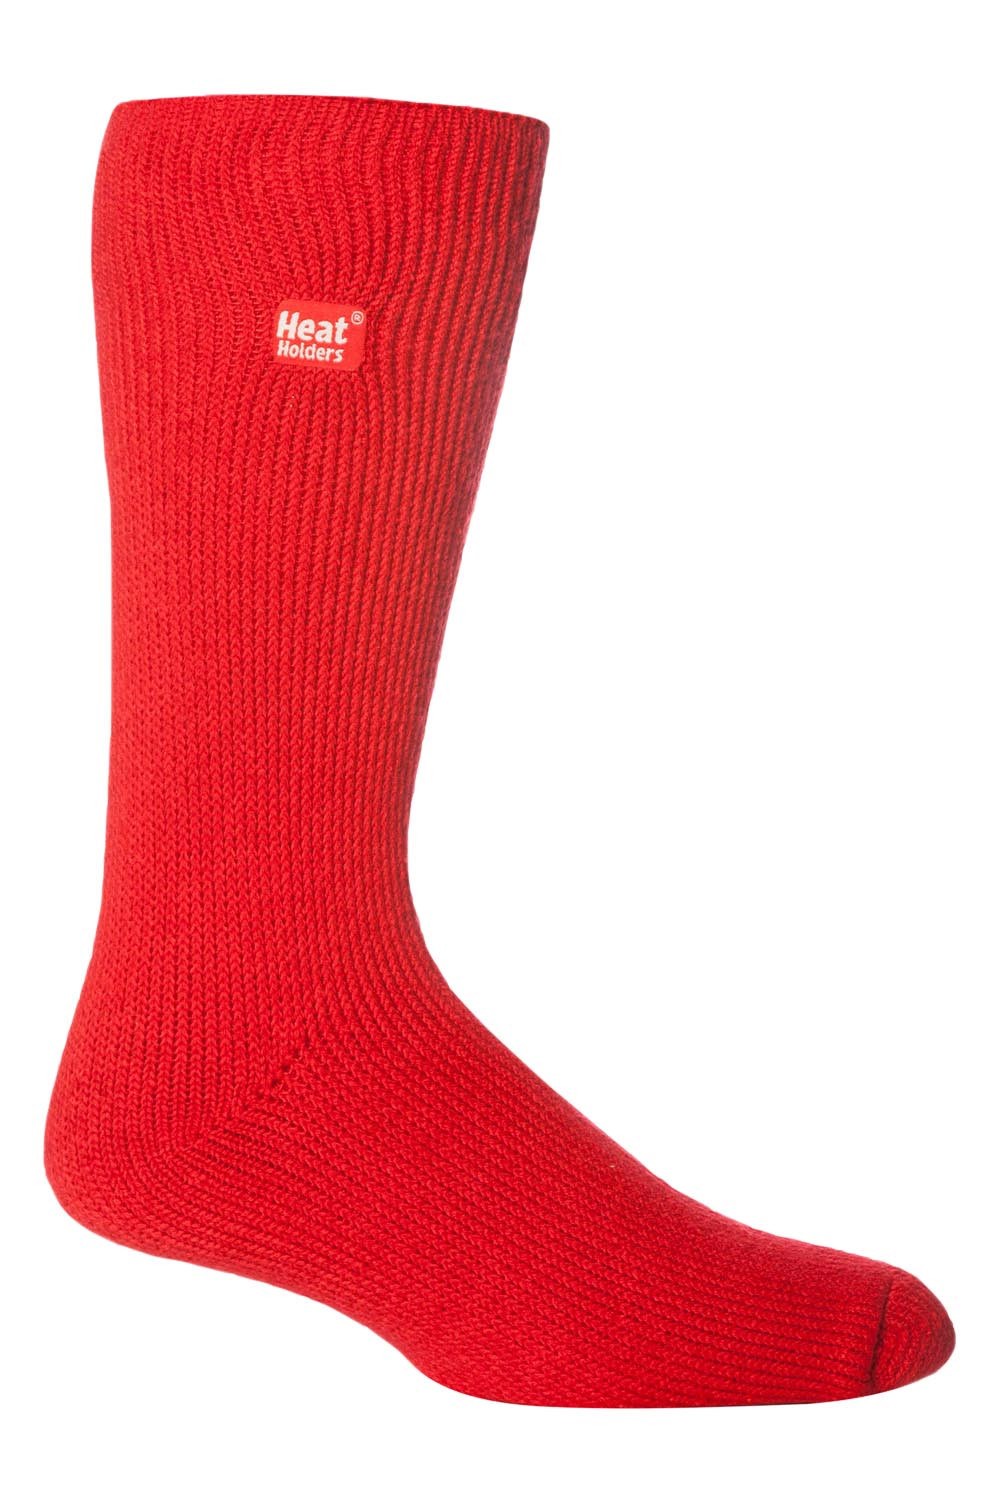 Mens Thick Original Thermal Socks